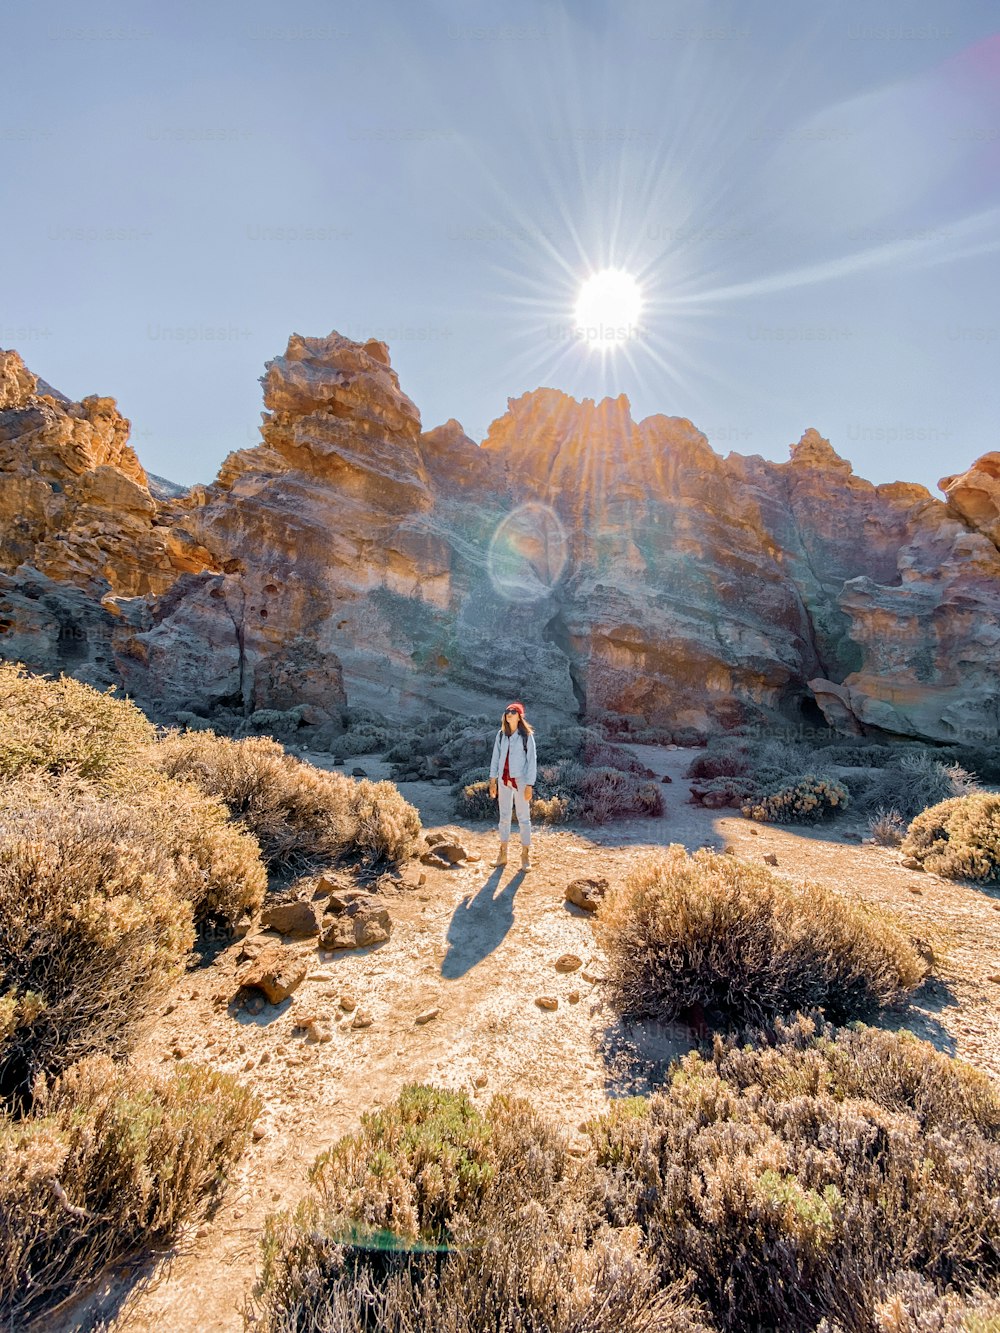 砂漠の谷に浮かぶ美しい岩の風景と女性が旅をしています。携帯電話で撮影した画像